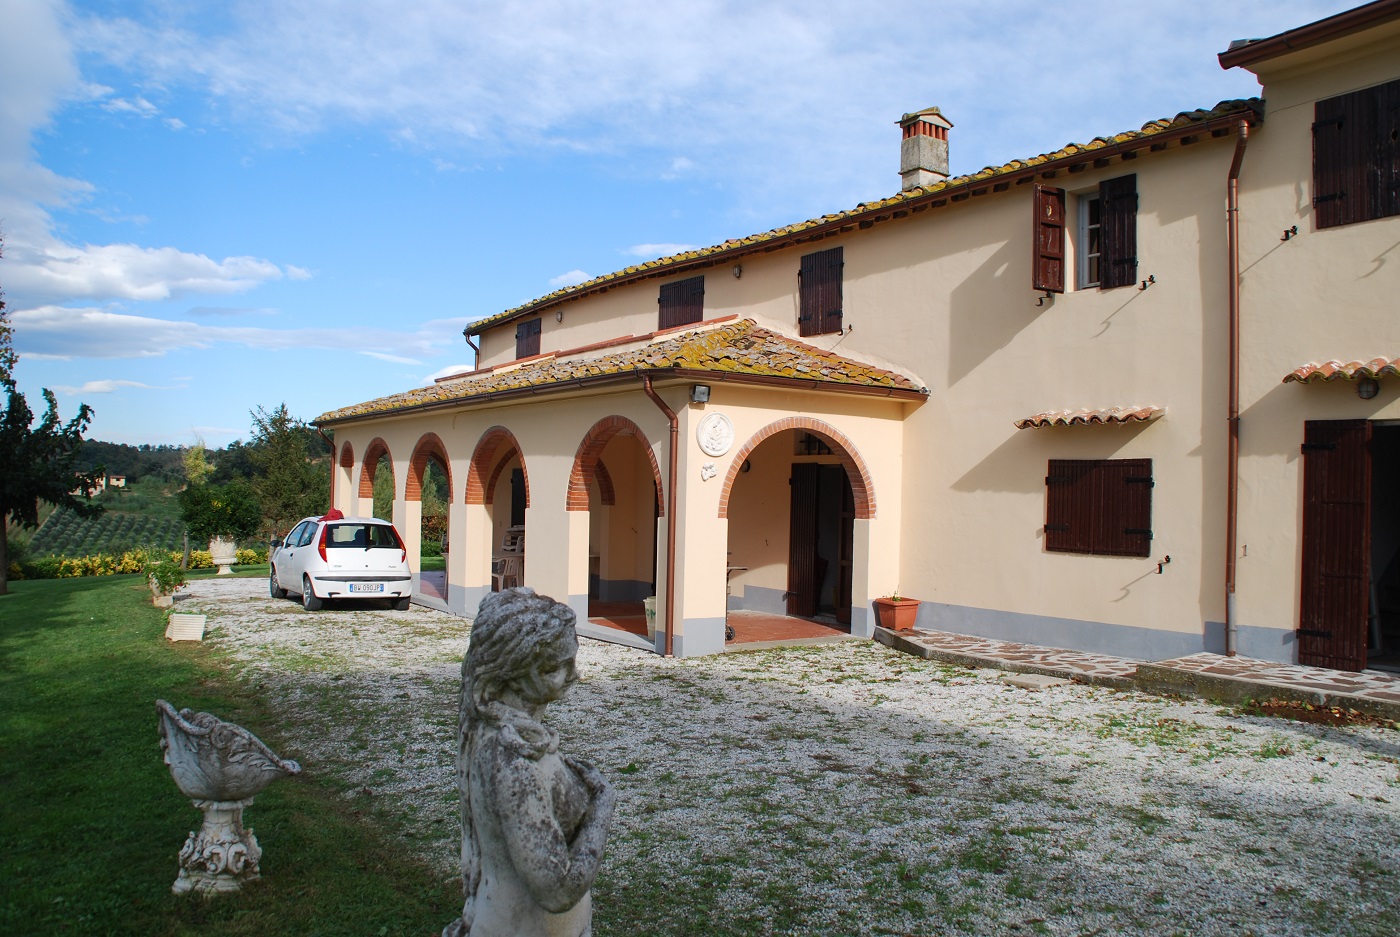 Immobilien in der Toscana jetzt wieder günstig